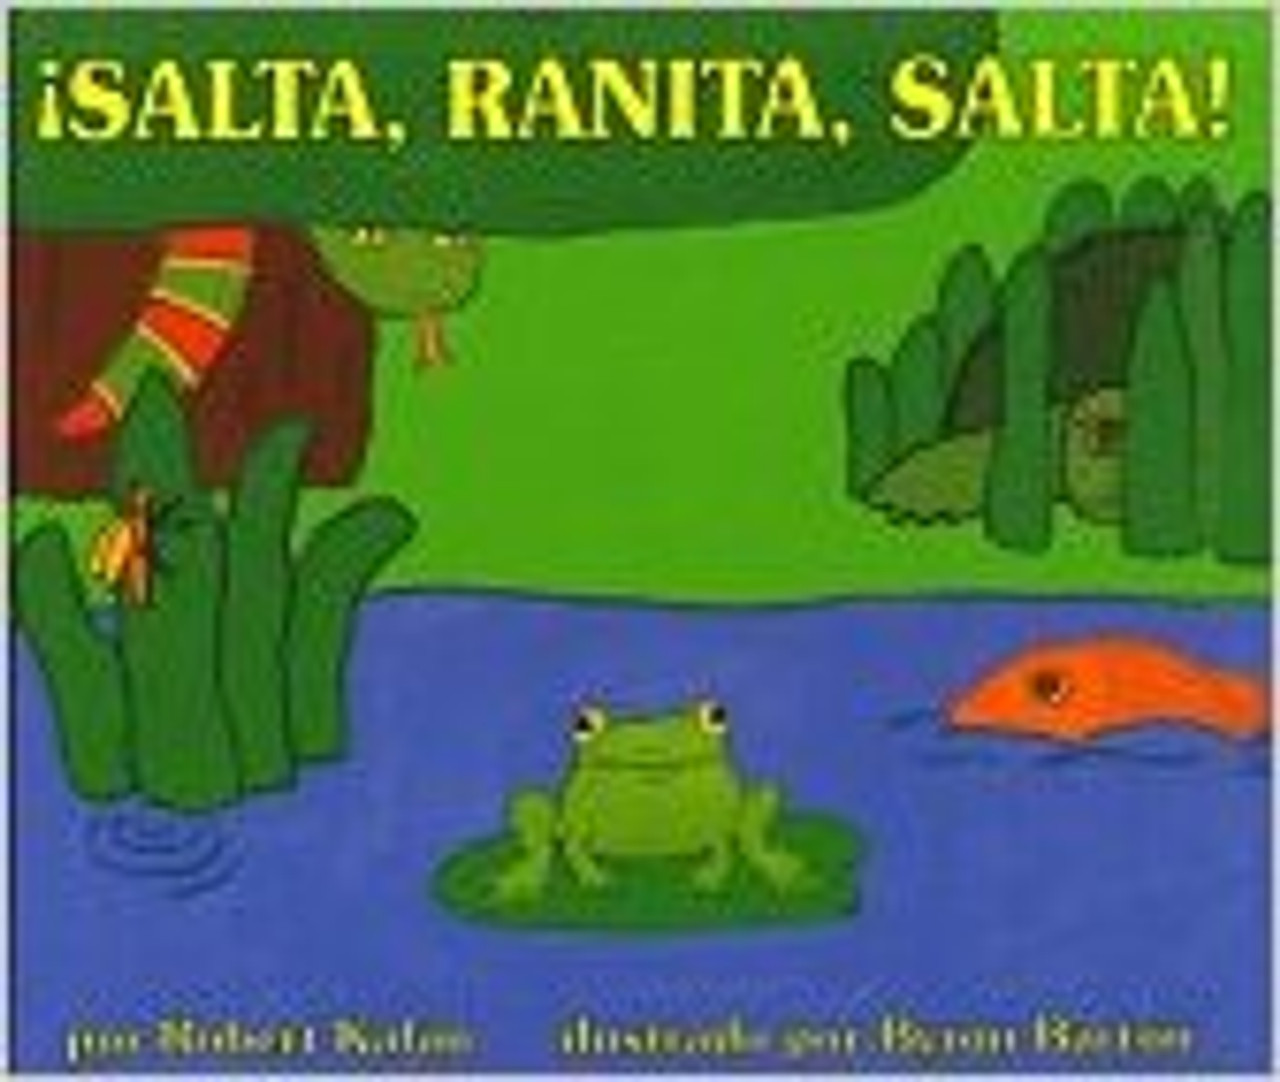 Salta, Ranita, Salta (Jump Frog Jump) by Robert Kalan